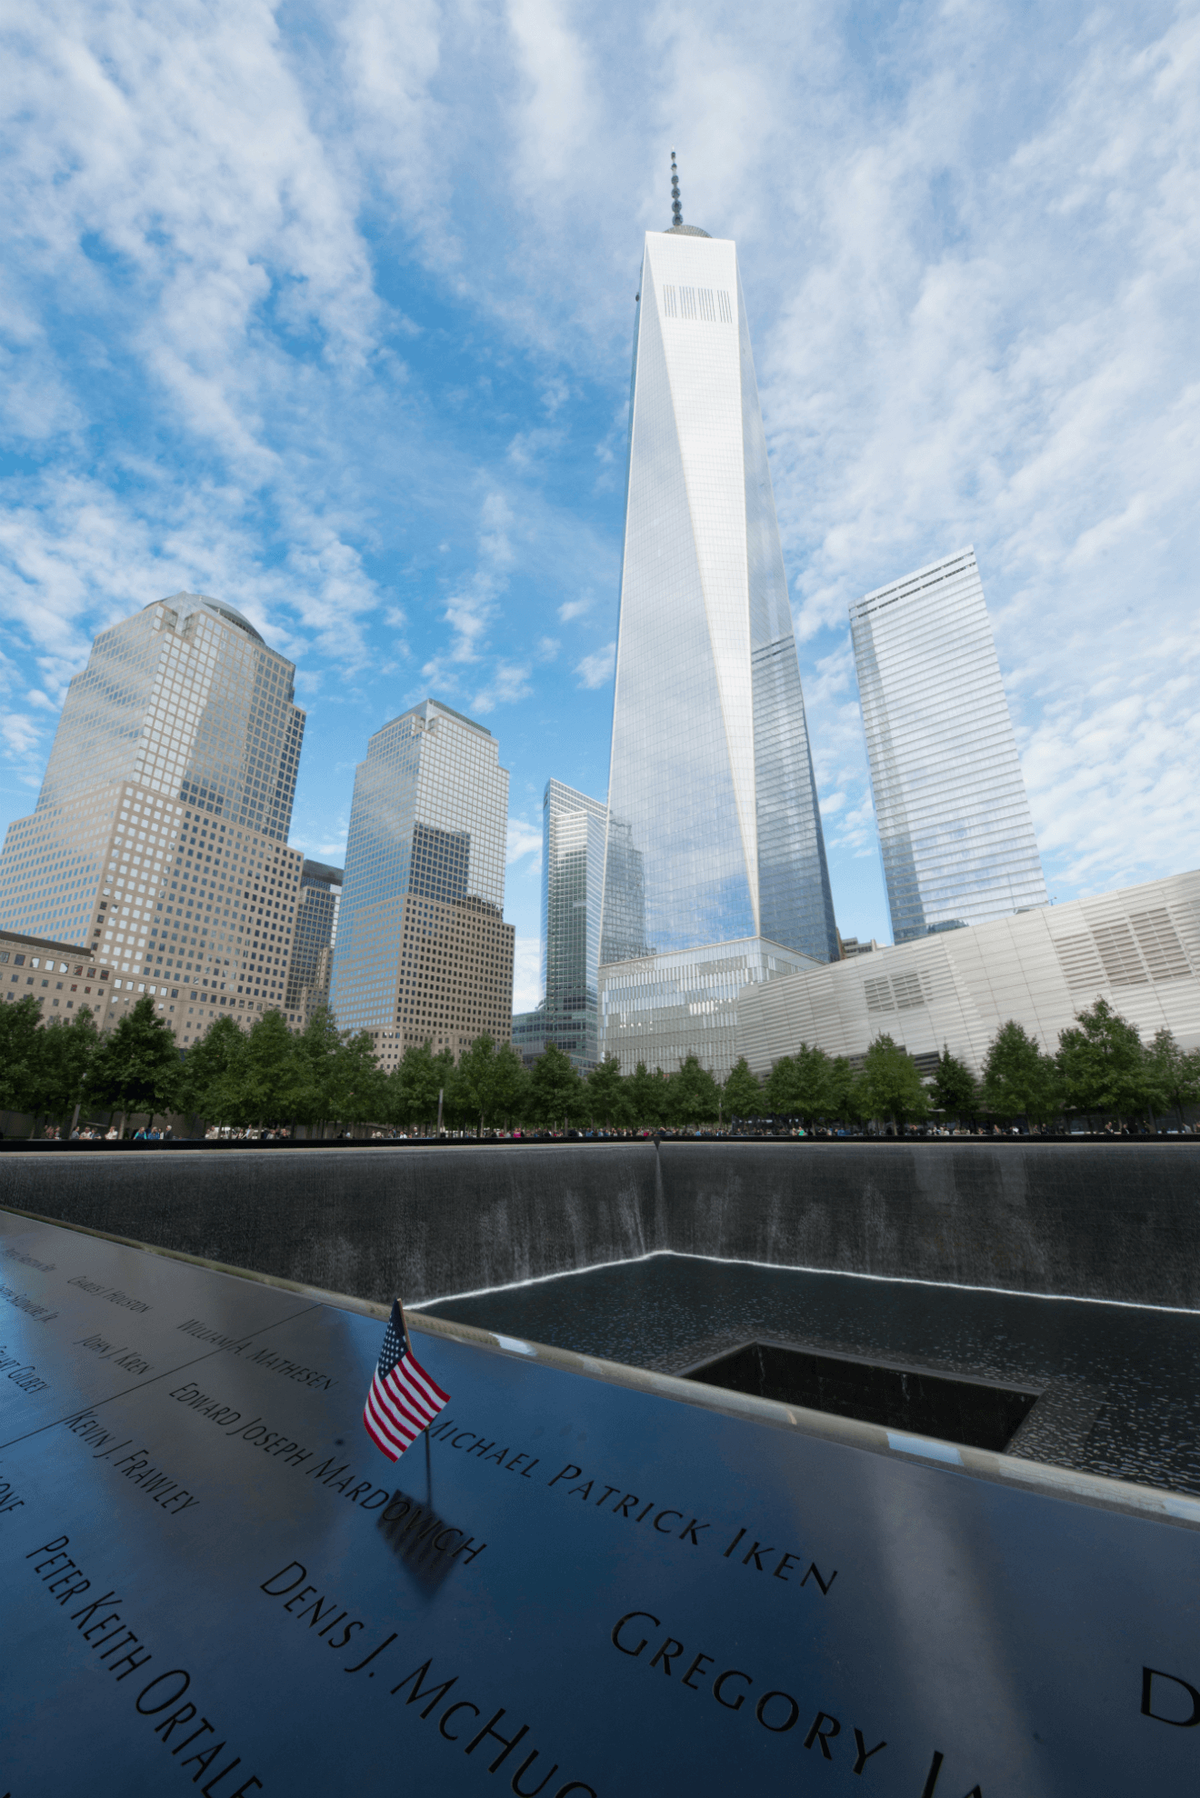 911 emlékmű szabadság torony látképe a háttérben